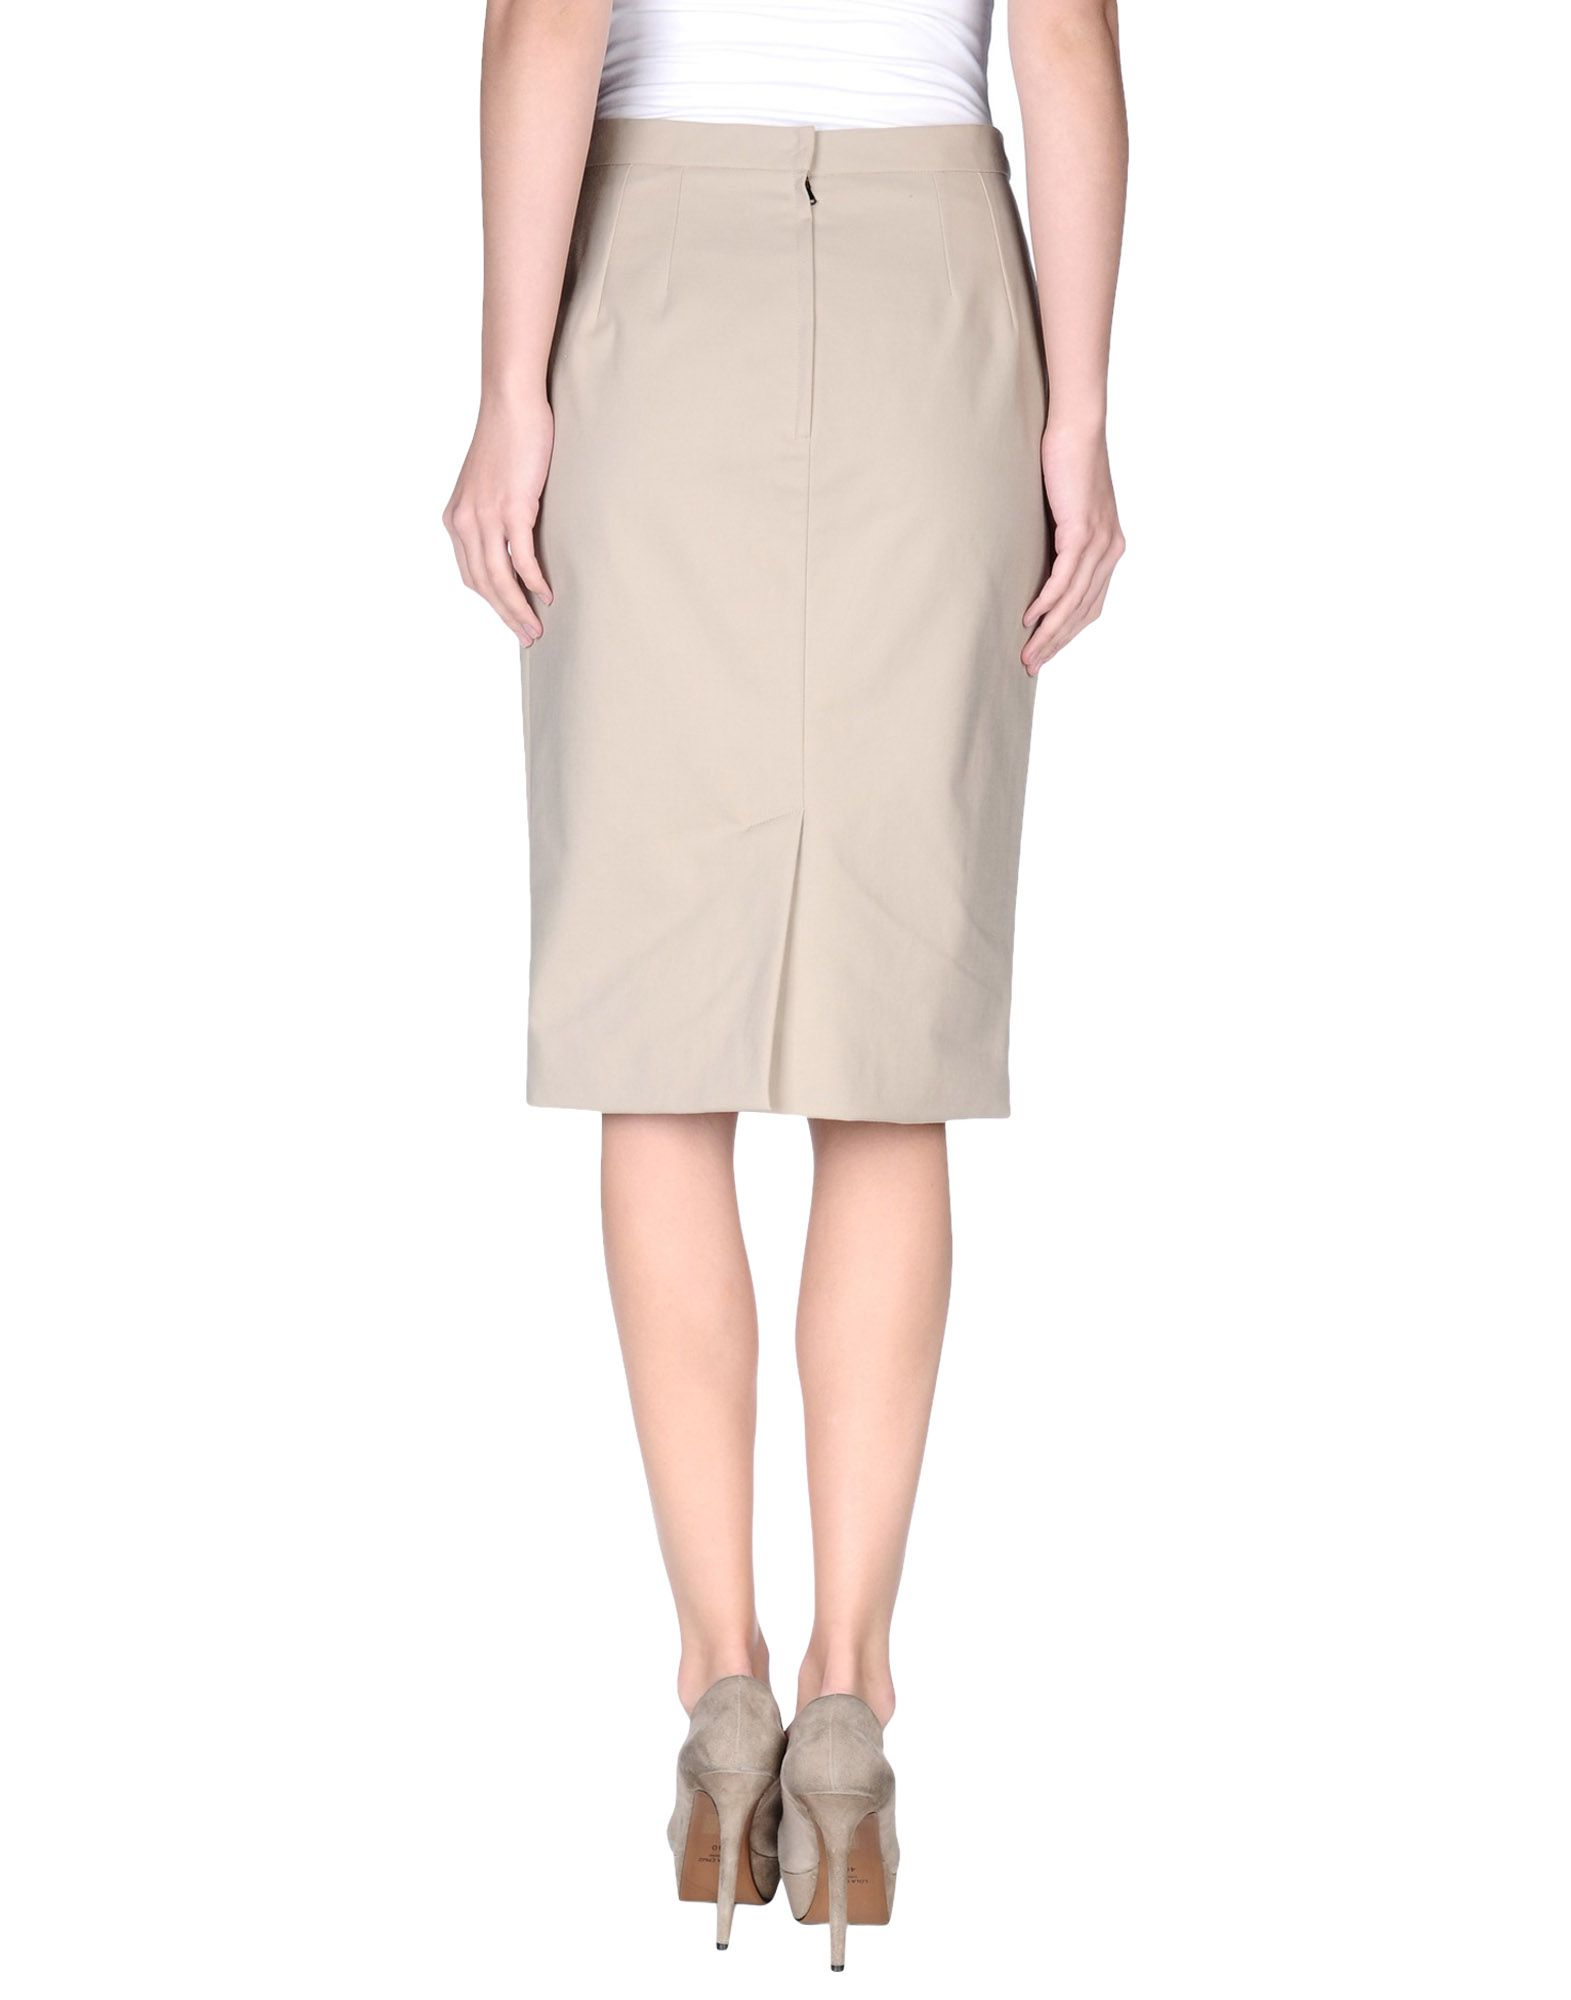 Dolce & gabbana Knee Length Skirt in Beige | Lyst